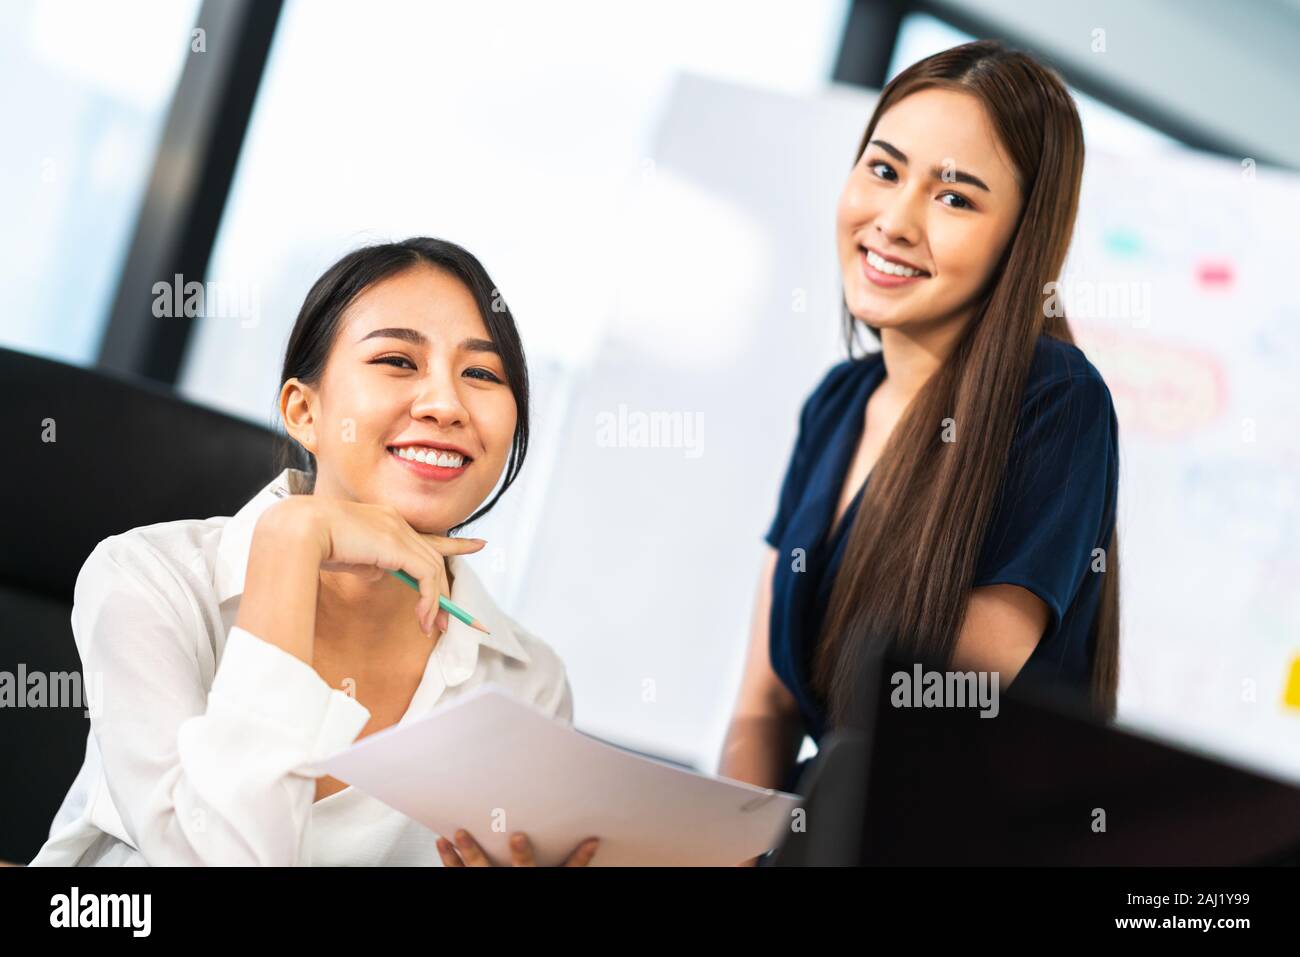 Portrait de deux beaux collègues de bureau asiatiques souriant ensemble au travail. Collègues d'affaires, partenaire de travail d'équipe, conseiller en emploi ou femme de travail Banque D'Images